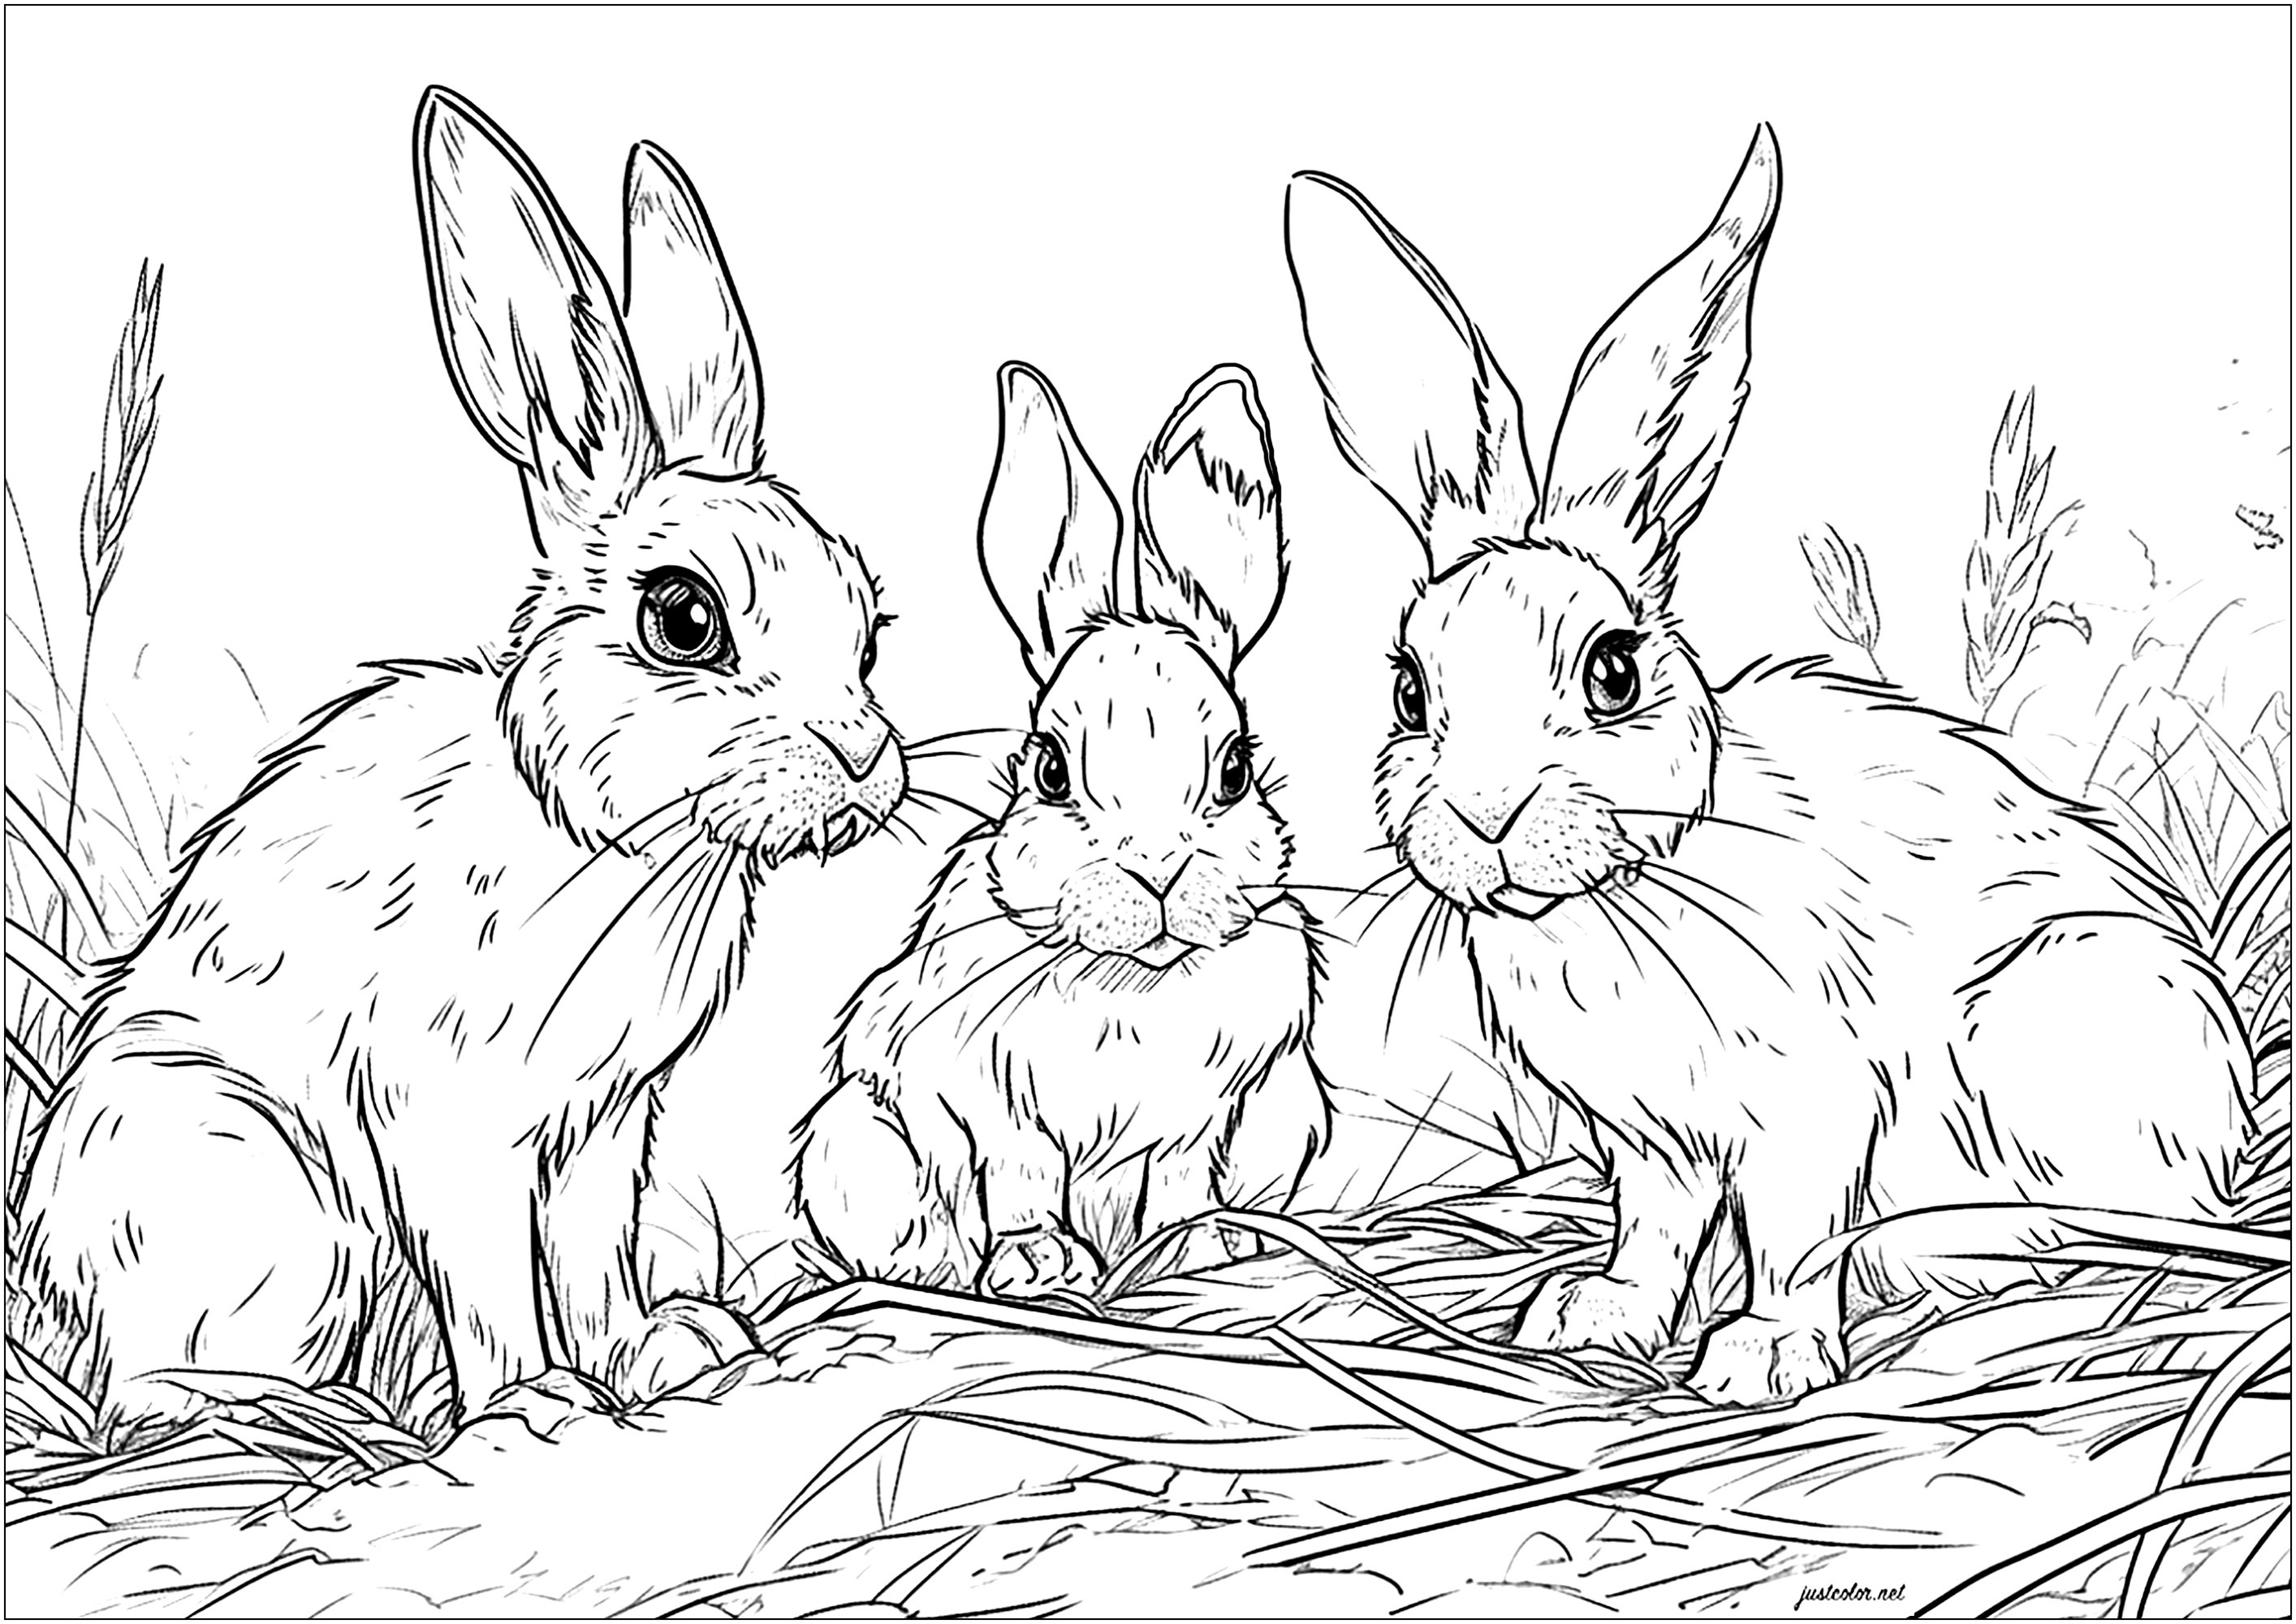 Três coelhinhos fofos na palha